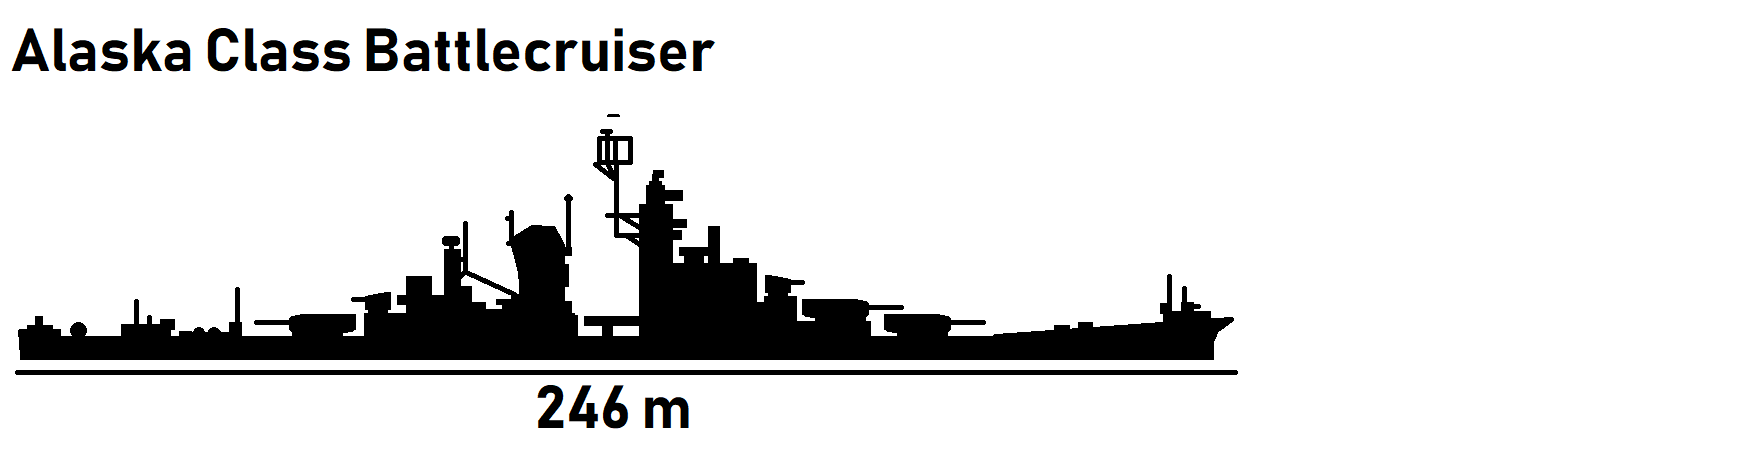 Alaska Class Battlecruiser